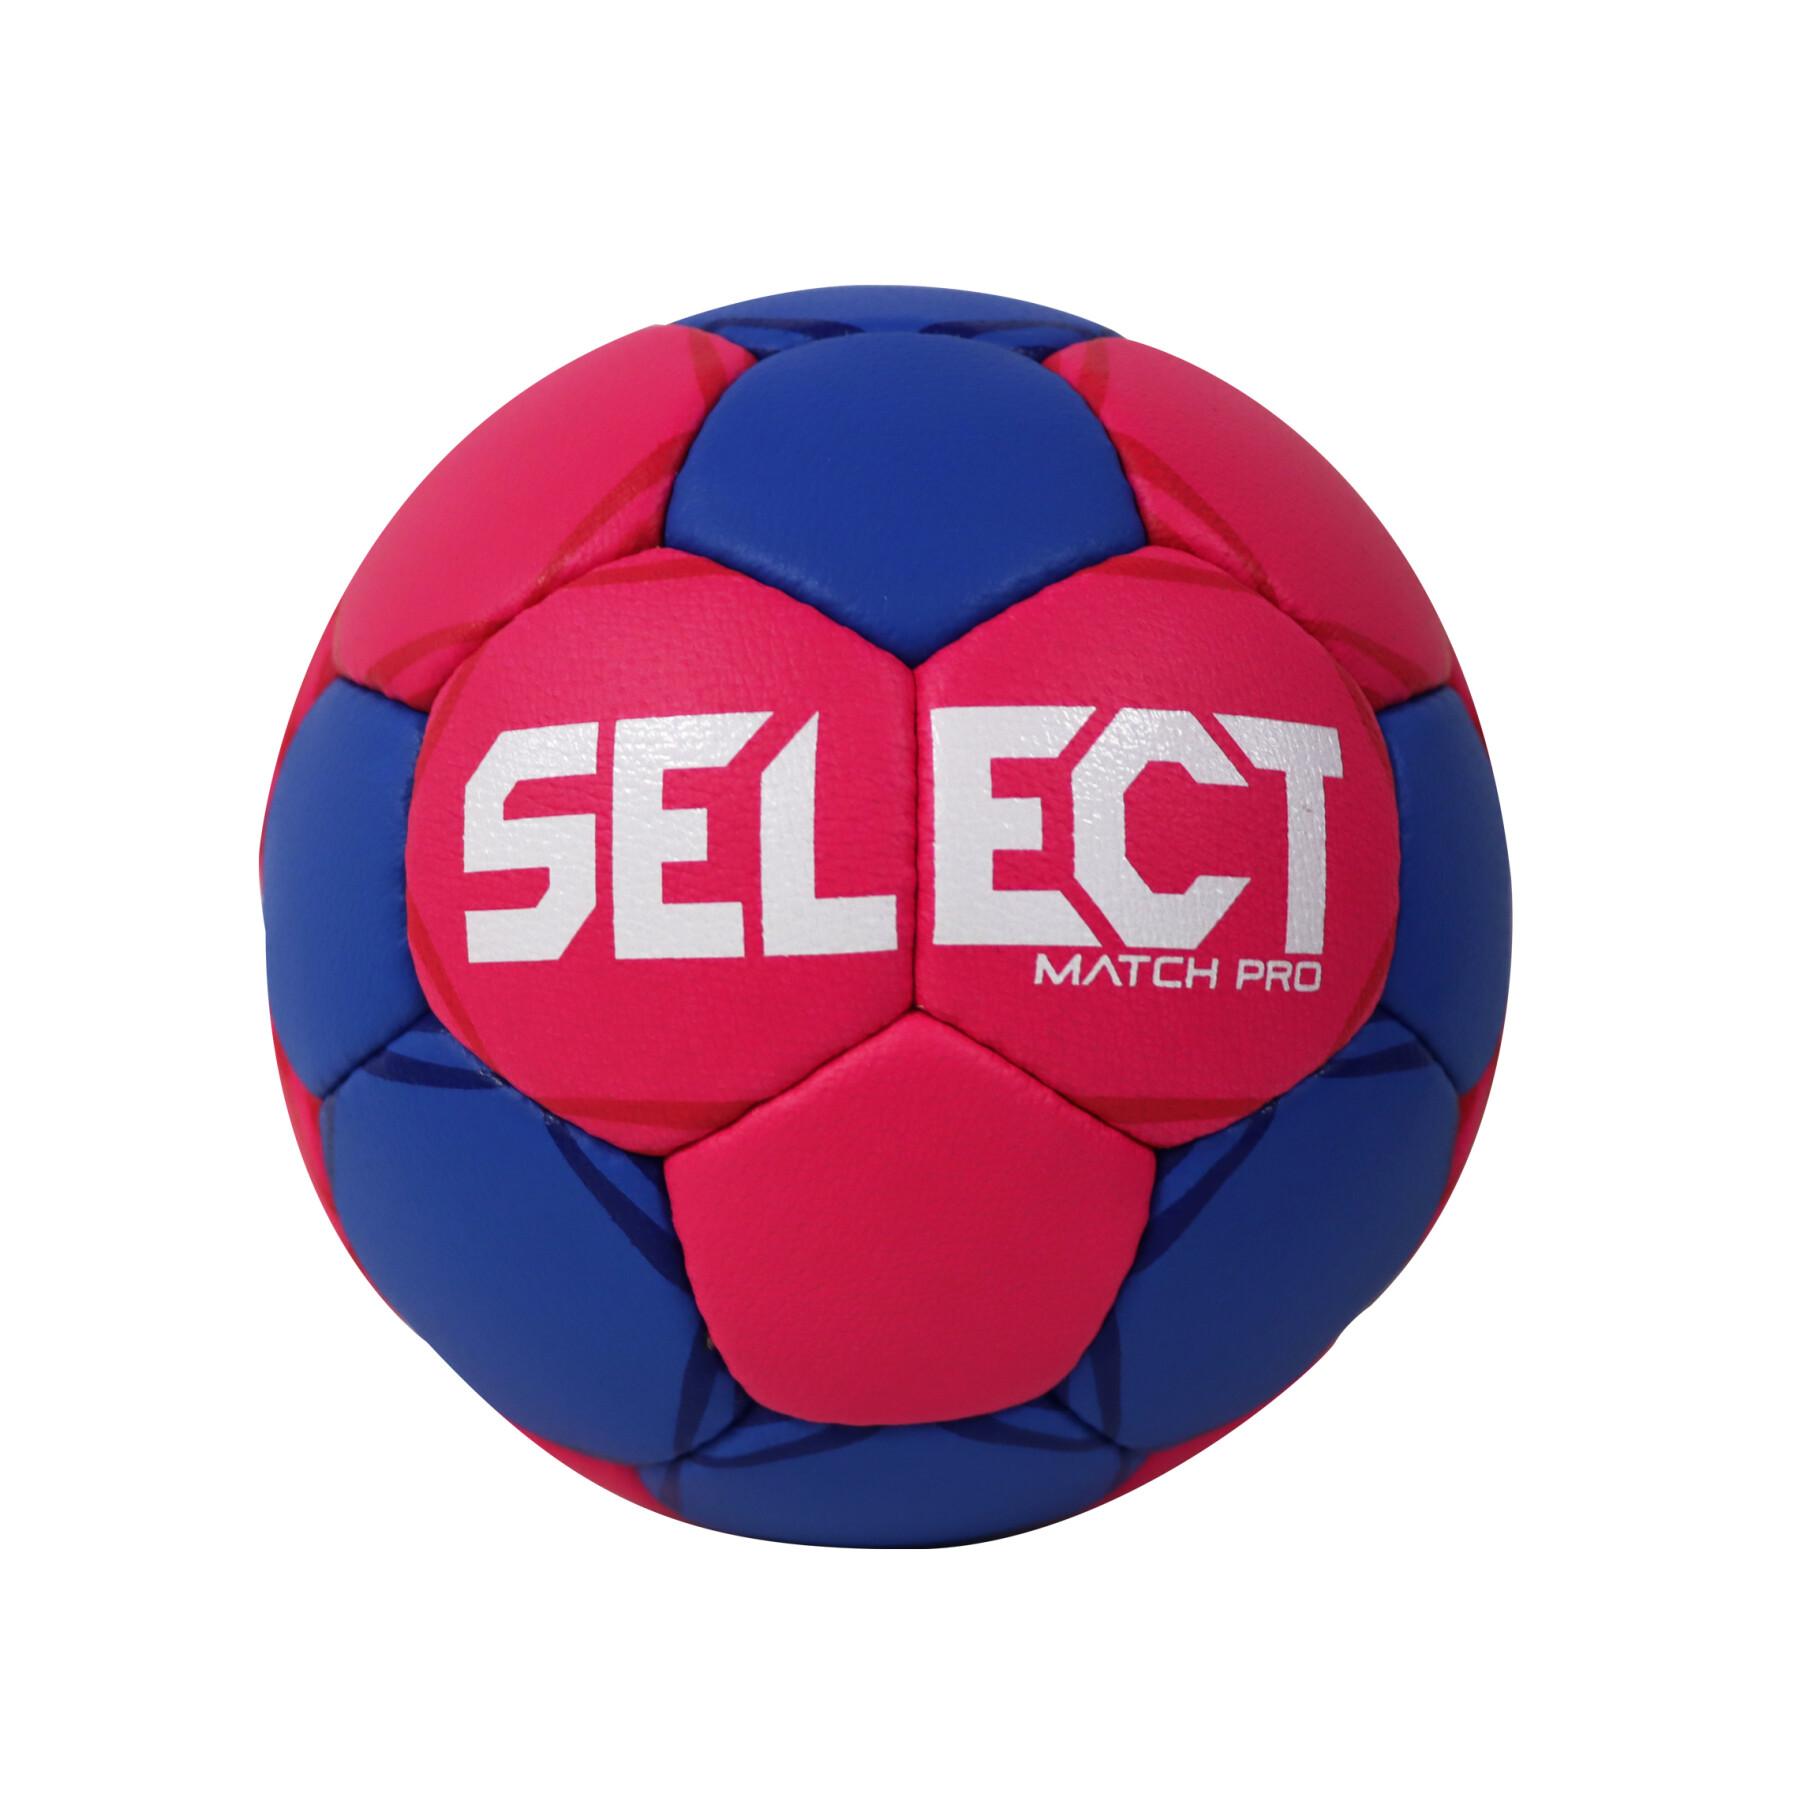 Ballon Select hb match pro t2 - Select - Marques - Ballons